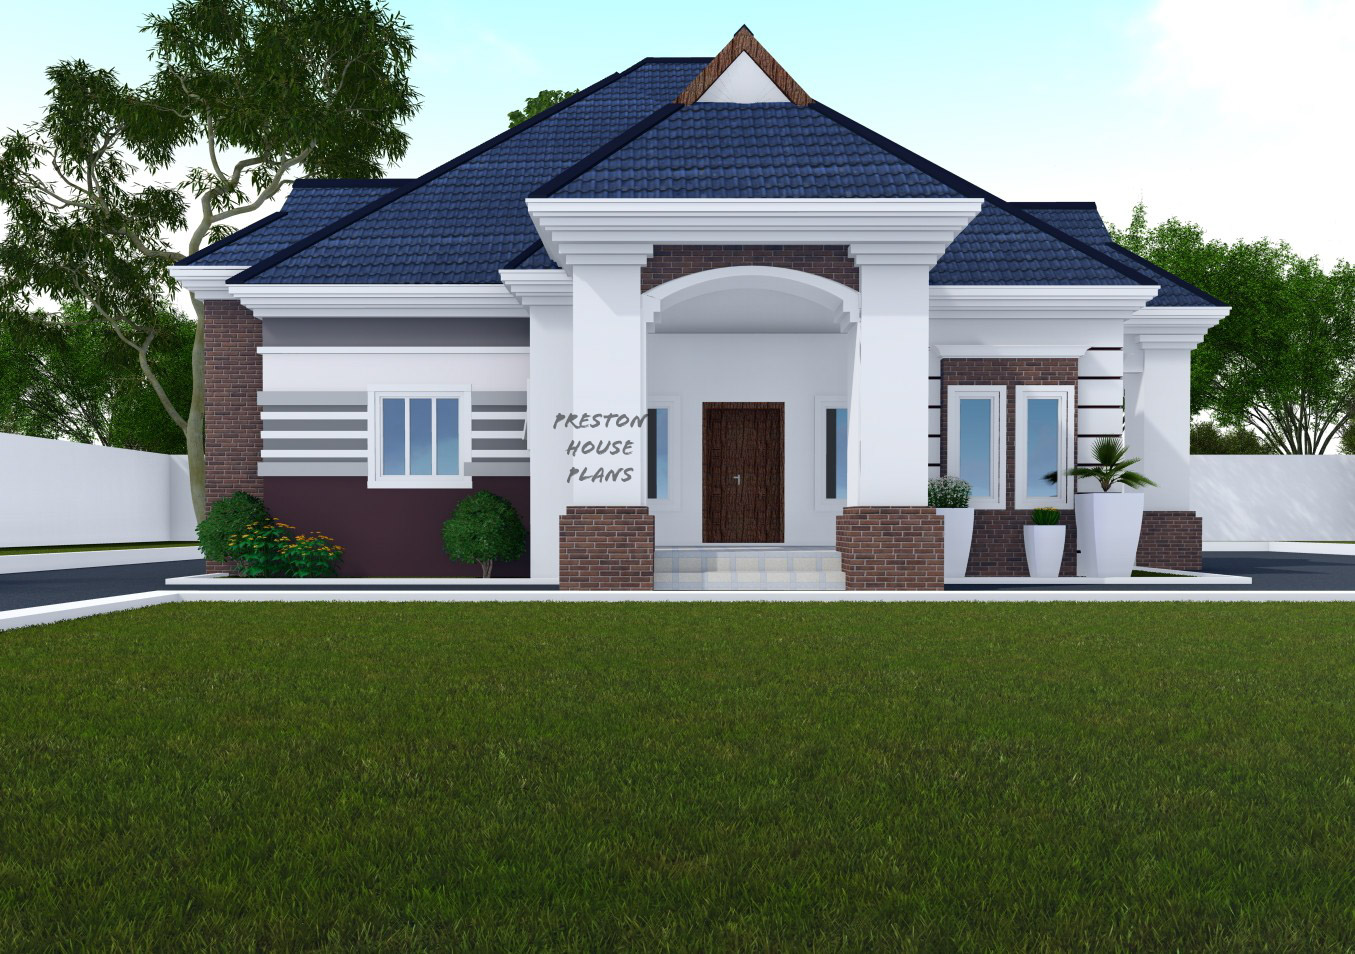 Four Bedroom Bungalow Floor Plan In Nigeria Viewfloor Co